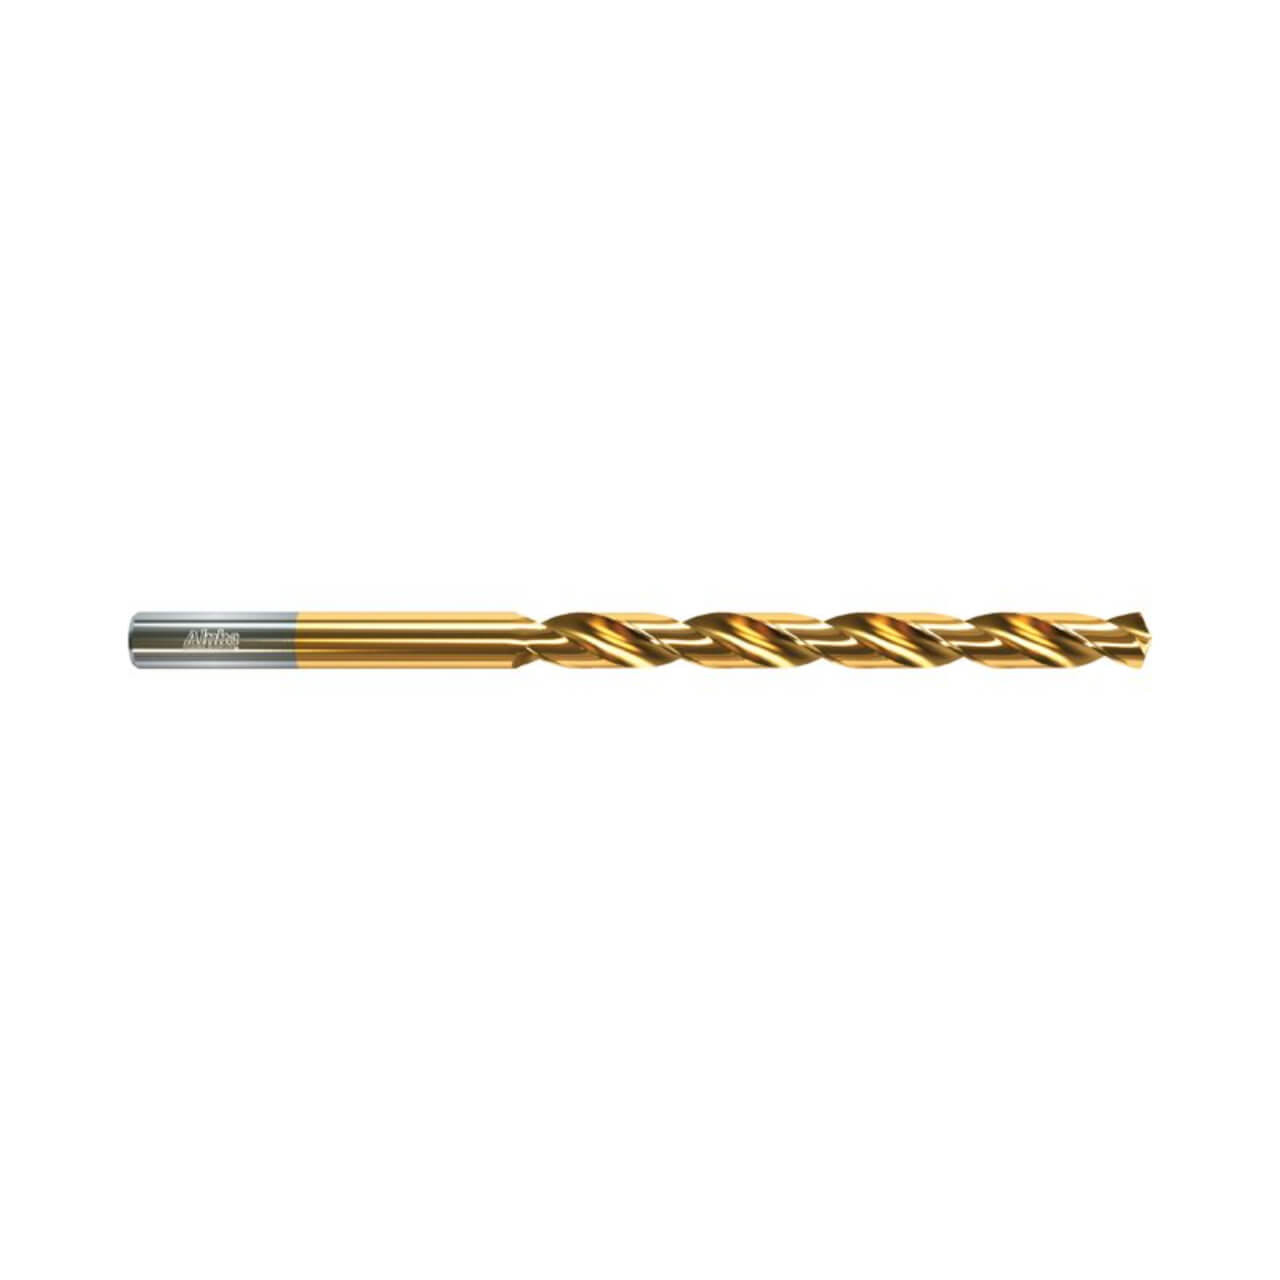 Alpha 9.5mm Long Series Drill Bit Gold Series (OAL 171mm)